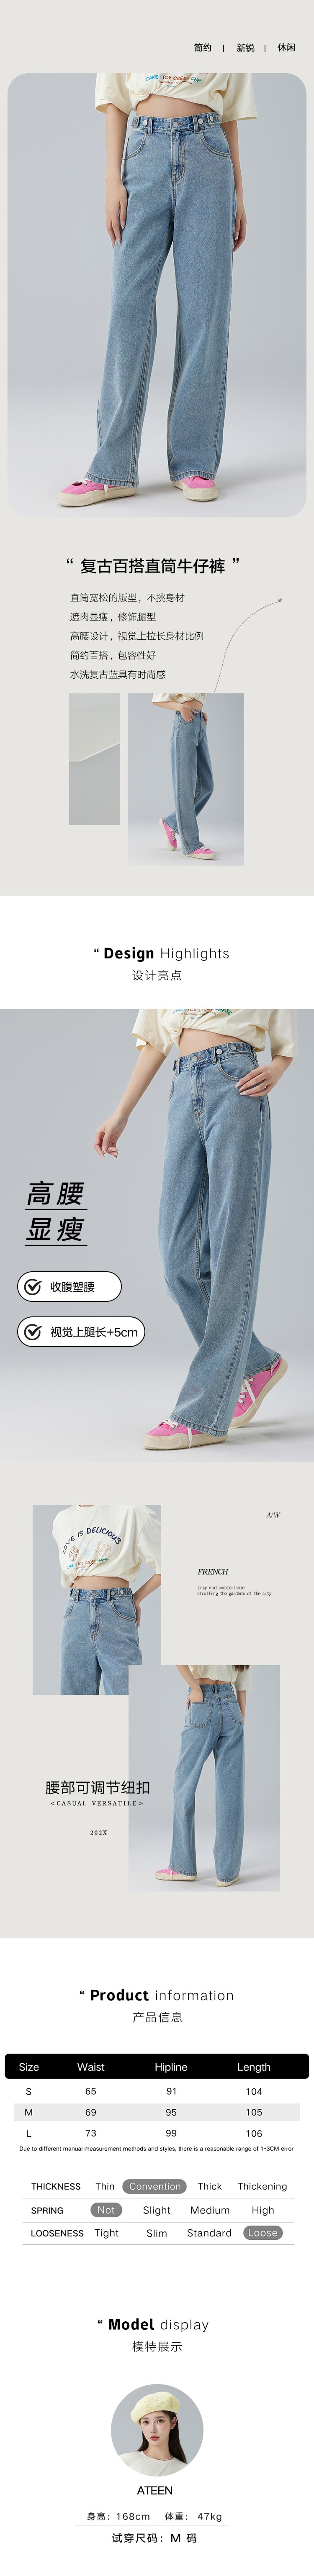 【中国直邮】HSPM新款宽松牛仔裤 蓝色 M